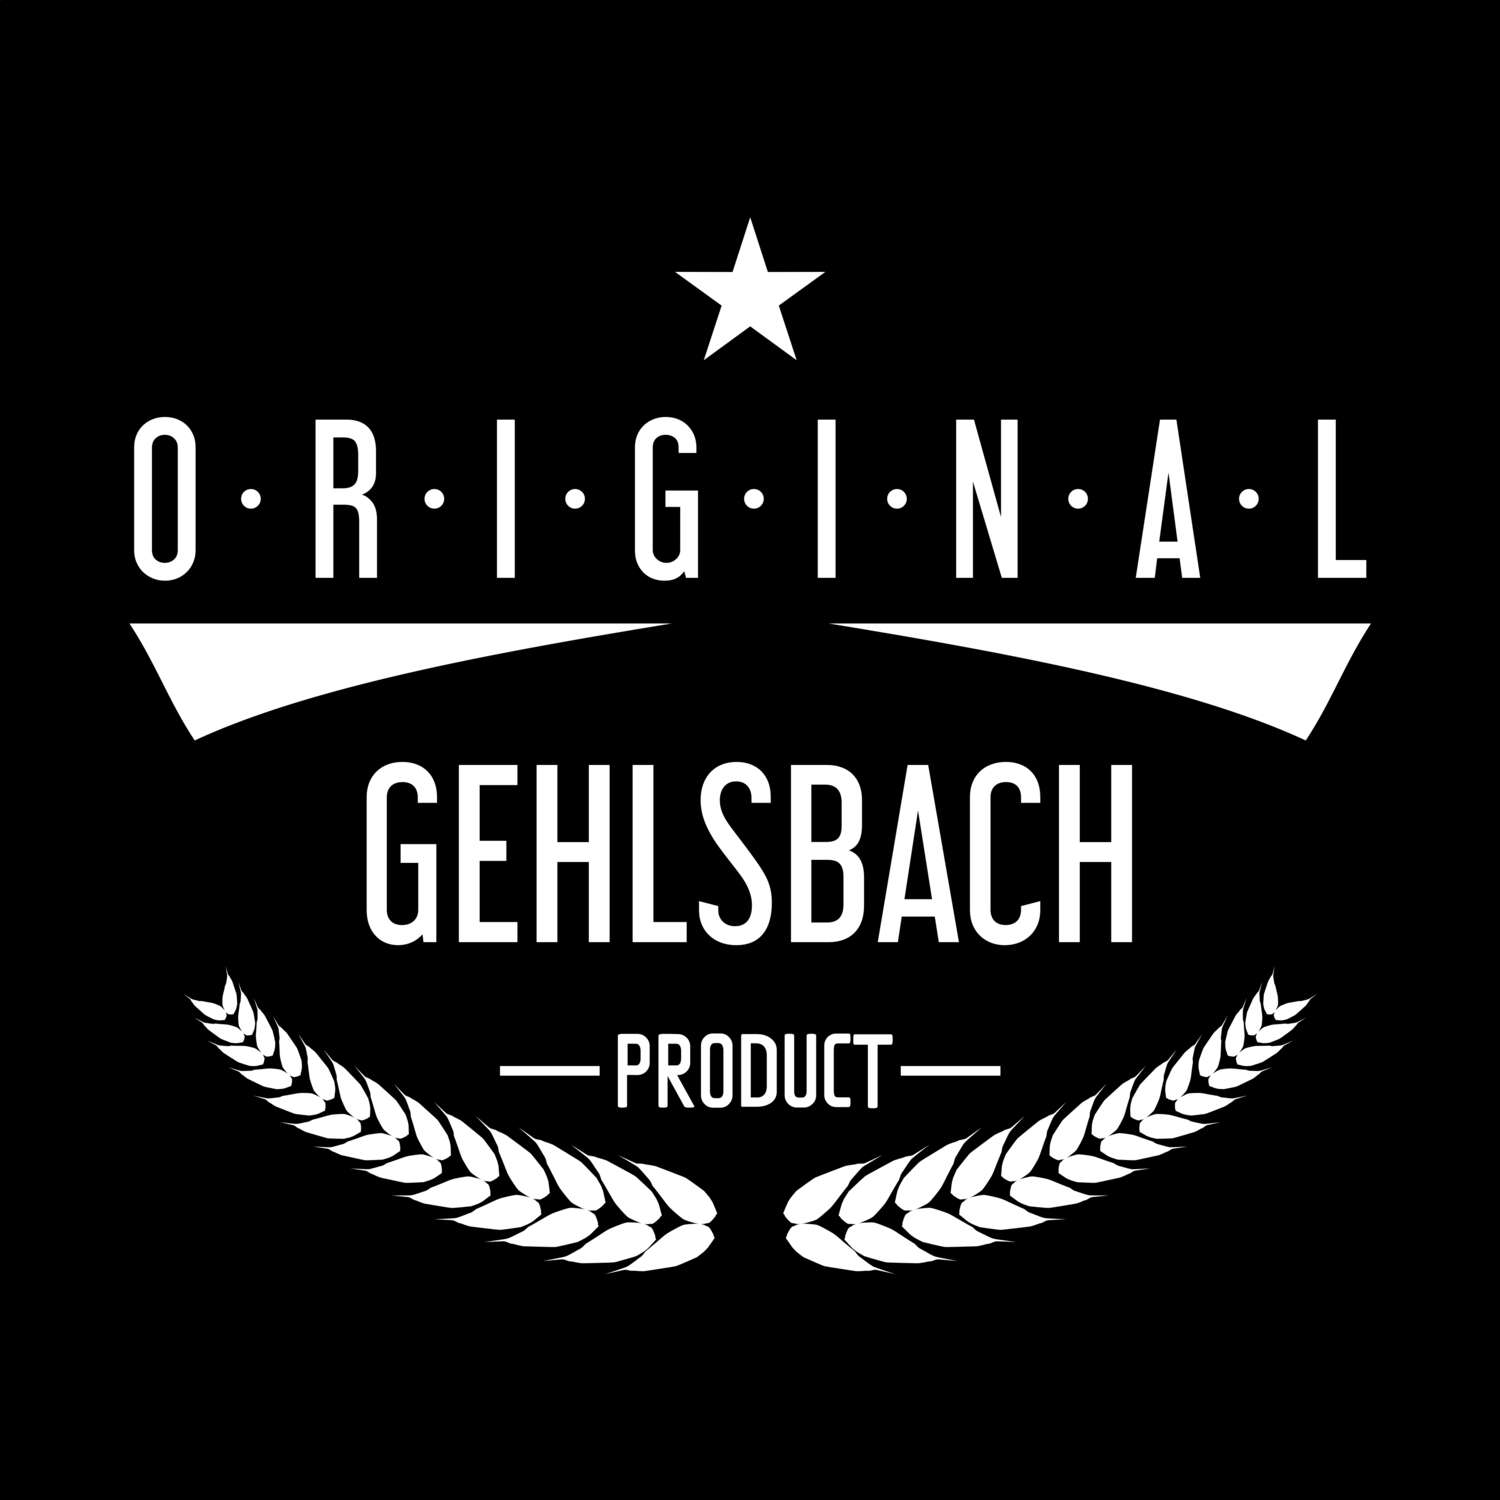 Gehlsbach T-Shirt »Original Product«